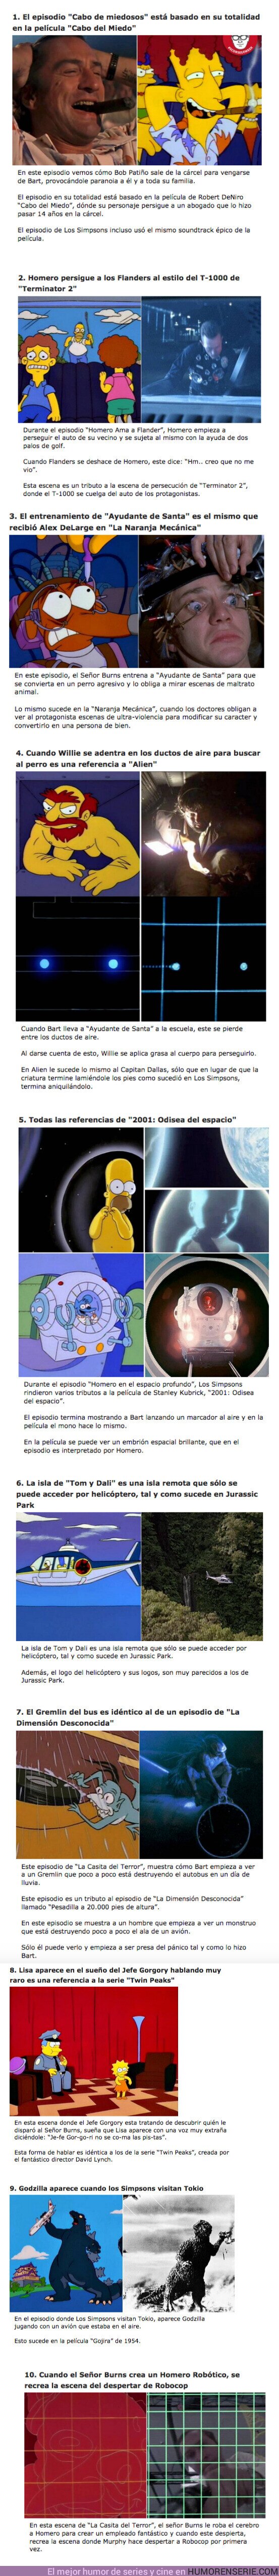 60584 - GALERÍA: 10 Episodios de “Los Simpsons” que recrearon escenas de películas fantásticas